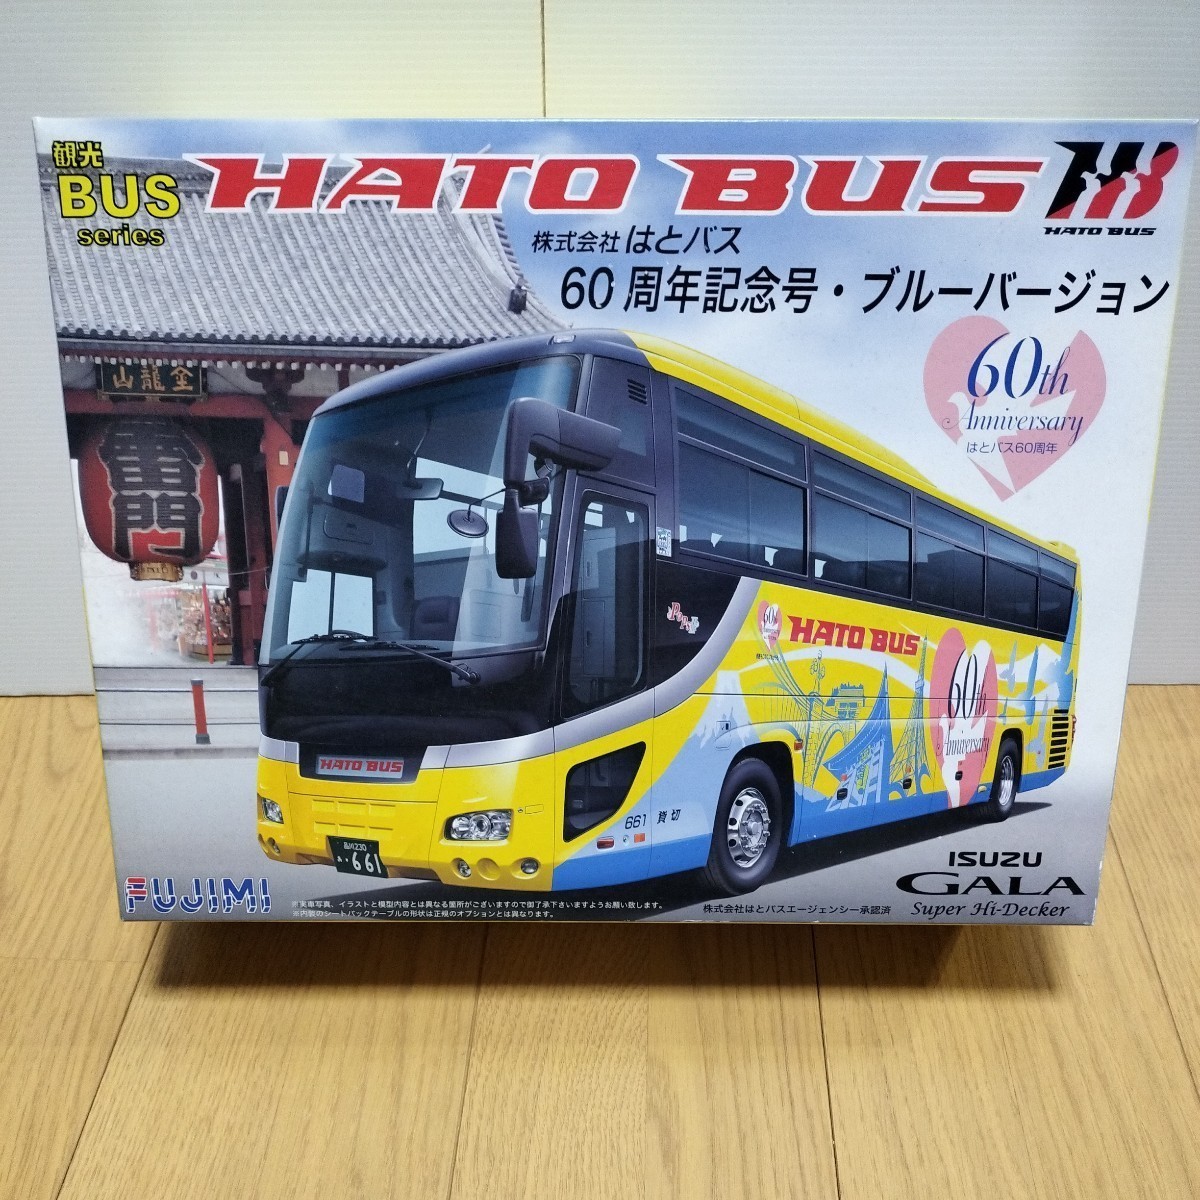  Fujimi plastic model [1/32 is . bus ISUZU GALA 60 anniversary ] unused not yet assembly FUJIMI Isuzu ga-la super High Decker 